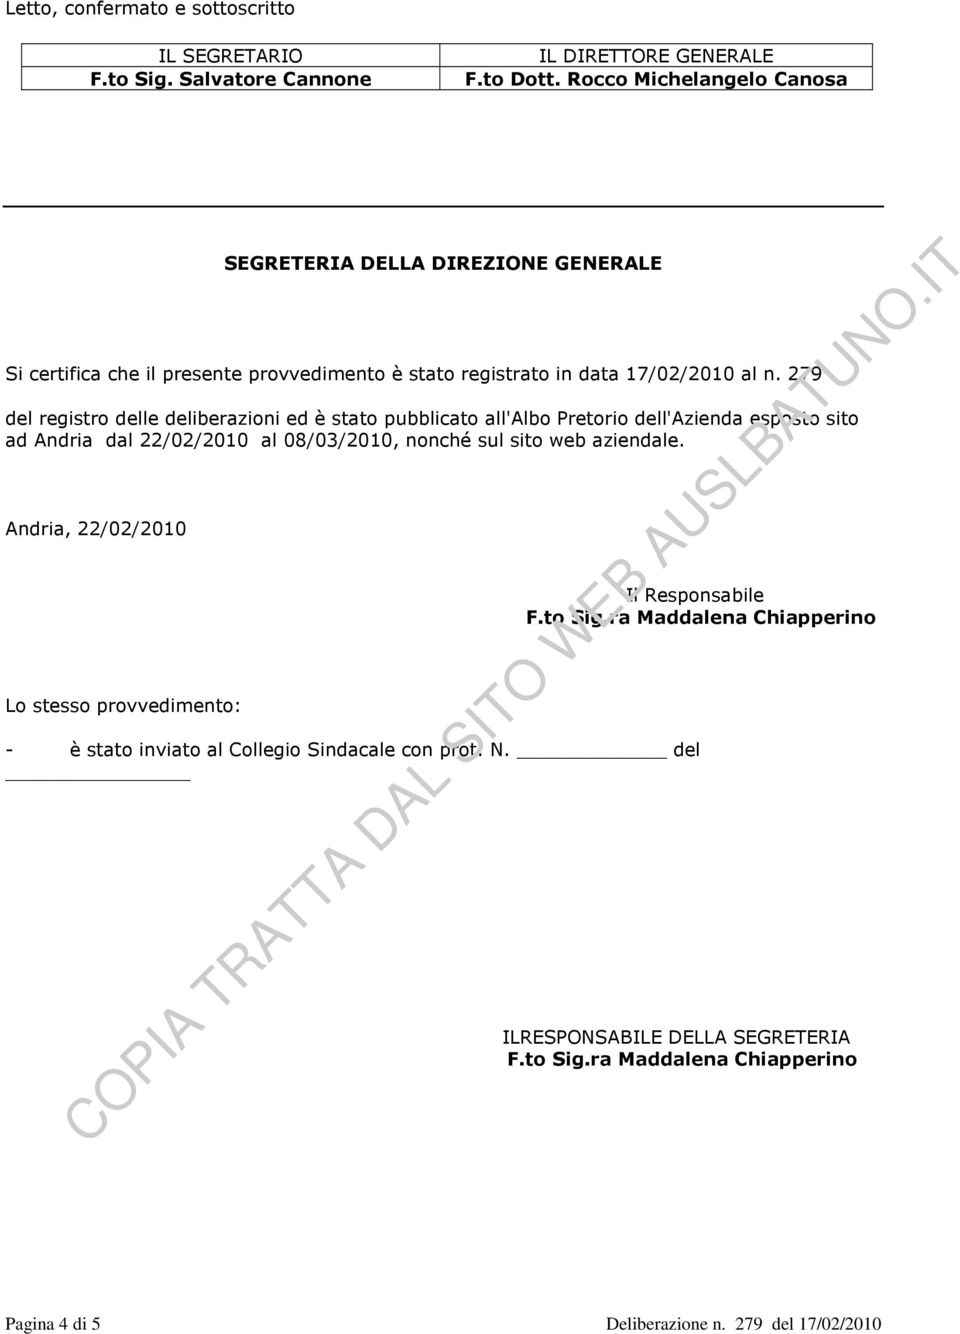 279 del registro delle deliberazioni ed è stato pubblicato all'albo Pretorio dell'azienda esposto sito ad Andria dal 22/02/2010 al 08/03/2010, nonché sul sito web aziendale.